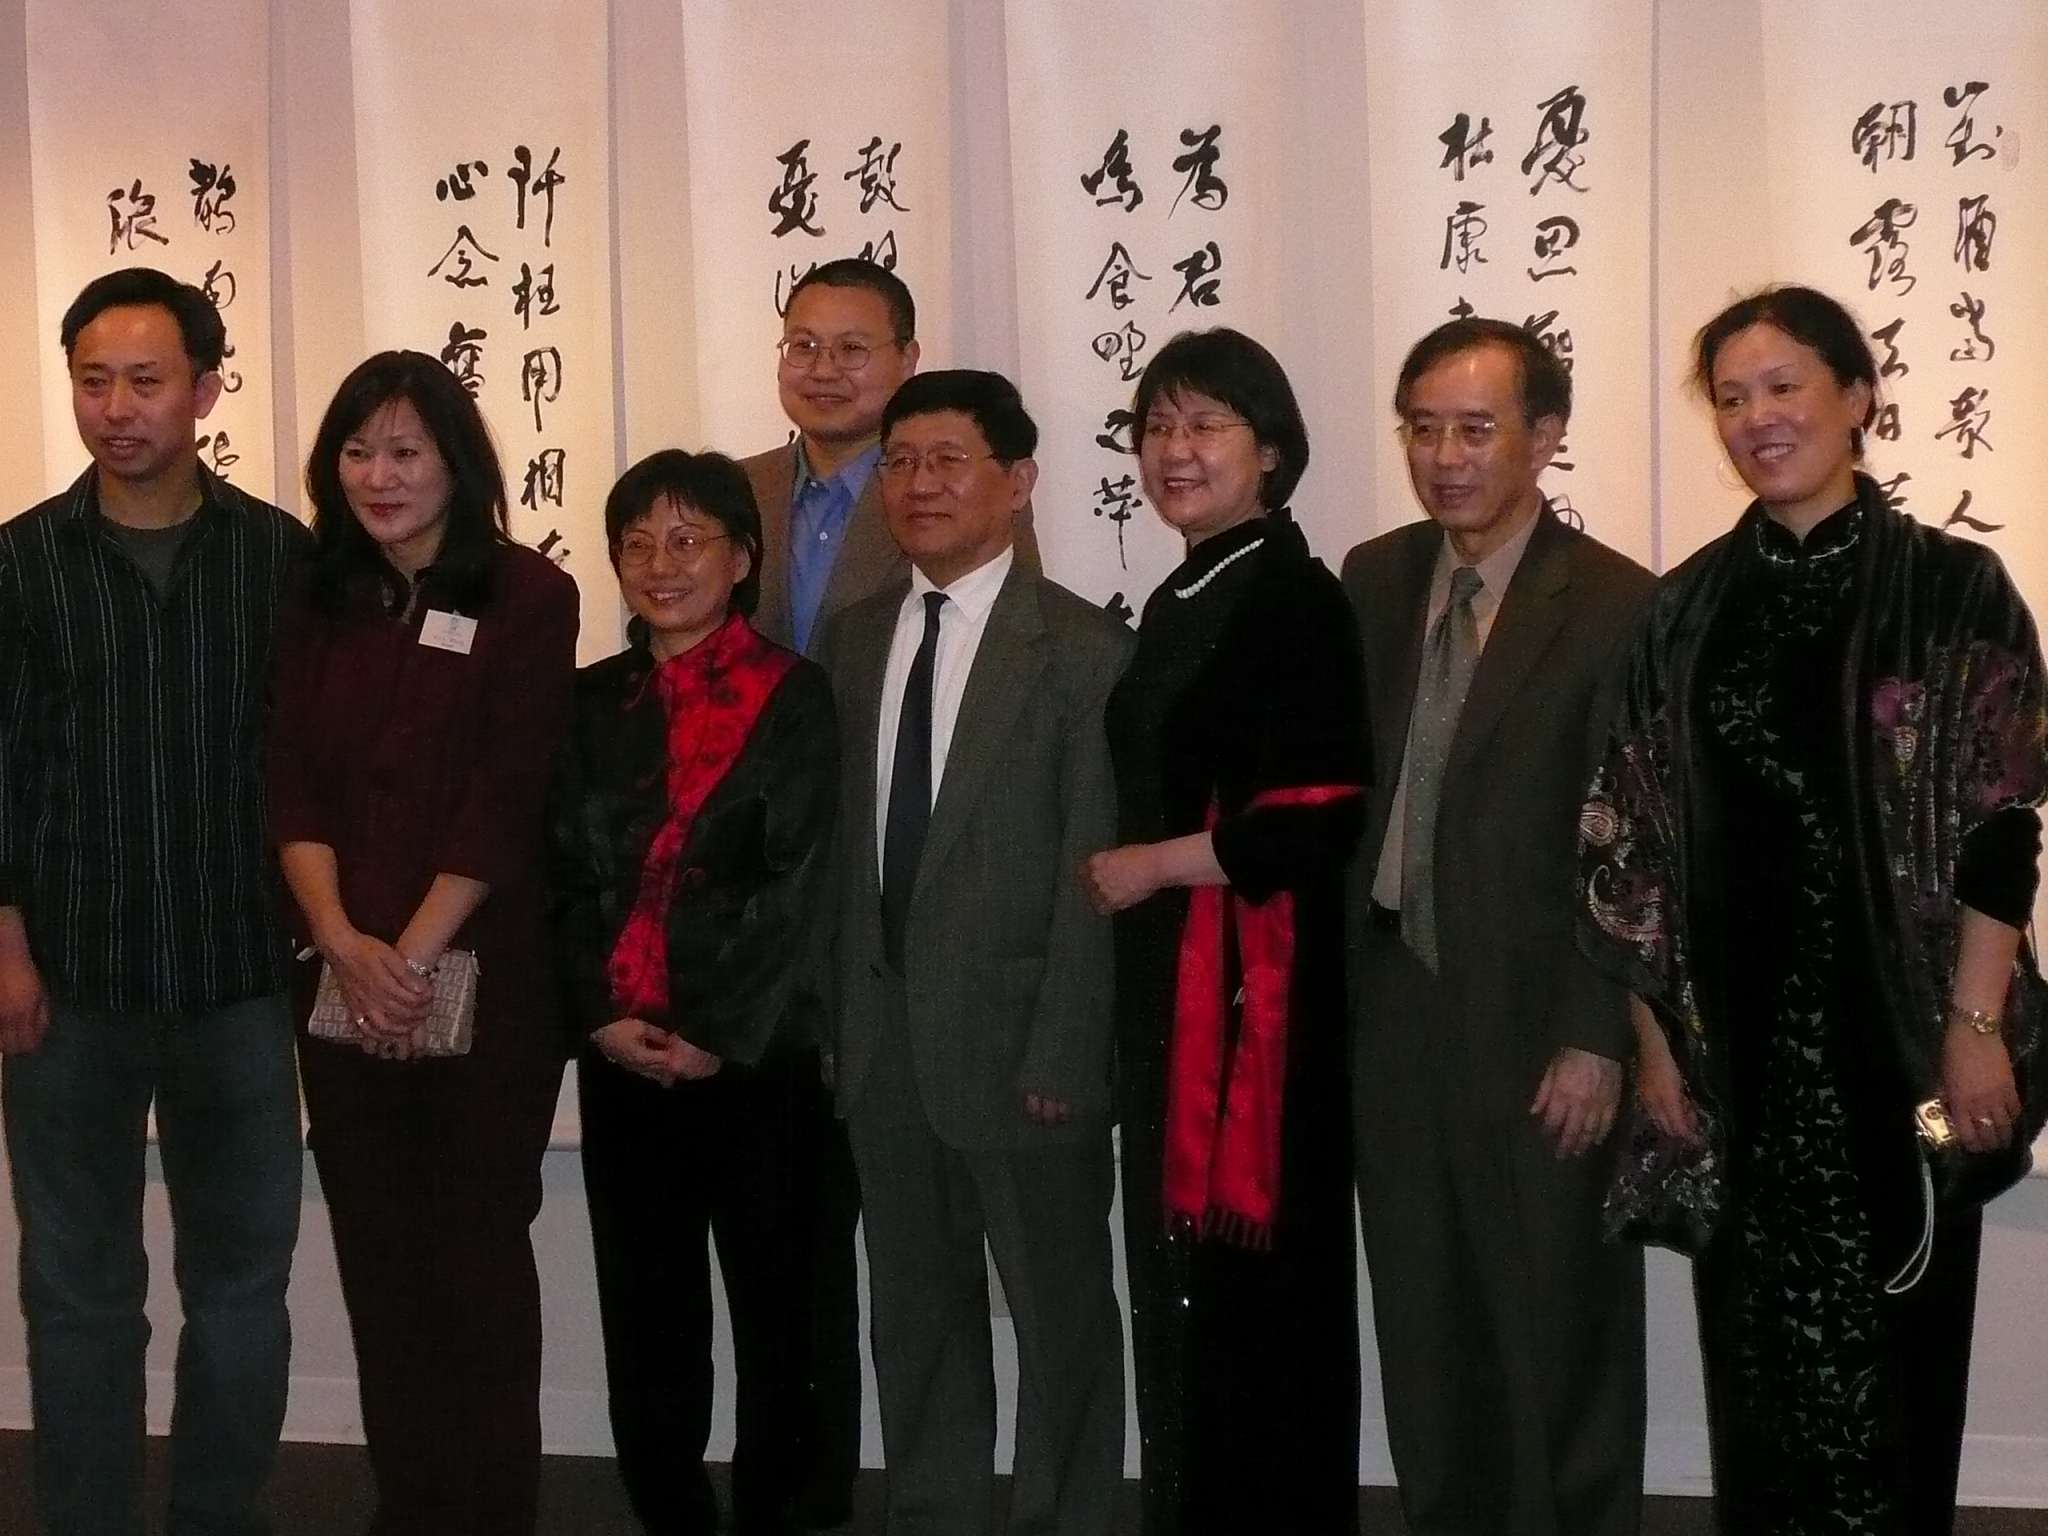 2007年2月18日美国旧金山亚洲艺术馆“姚奠中书艺展”开幕式中国驻旧金山文化领事（右四）以